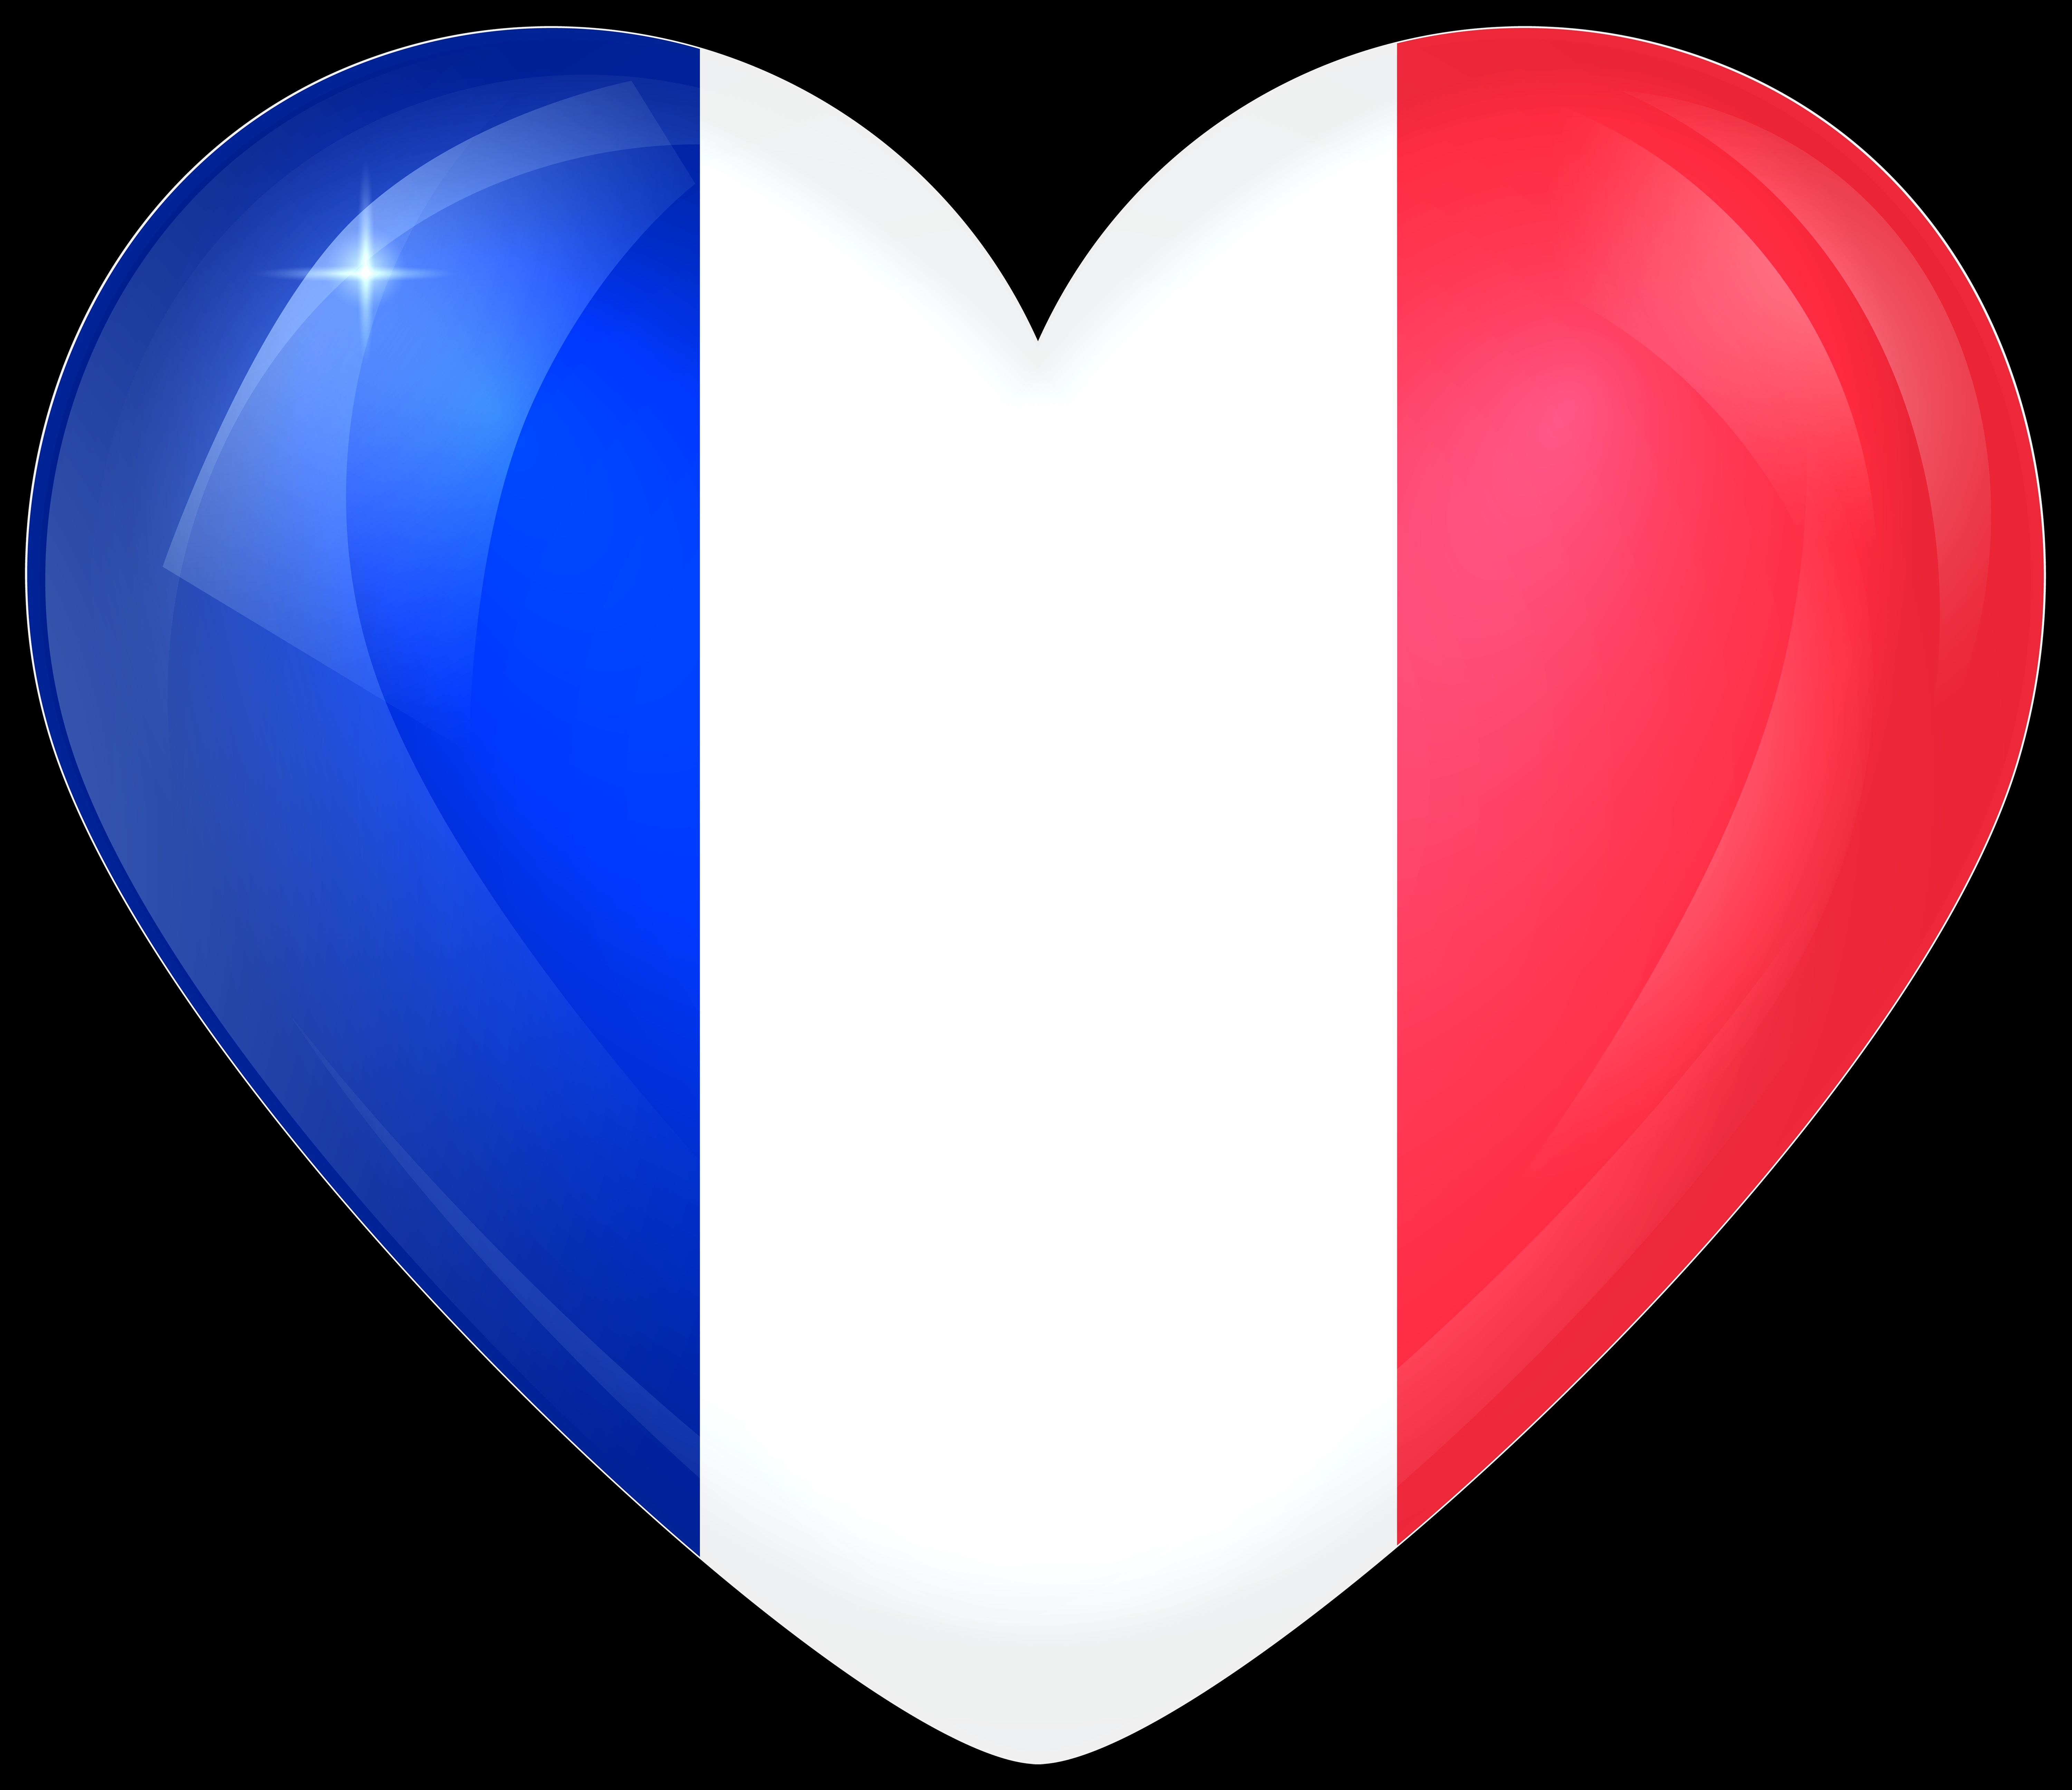 467478 Обои и Флаг Франции картинки на рабочий стол. Скачать  заставки на ПК бесплатно